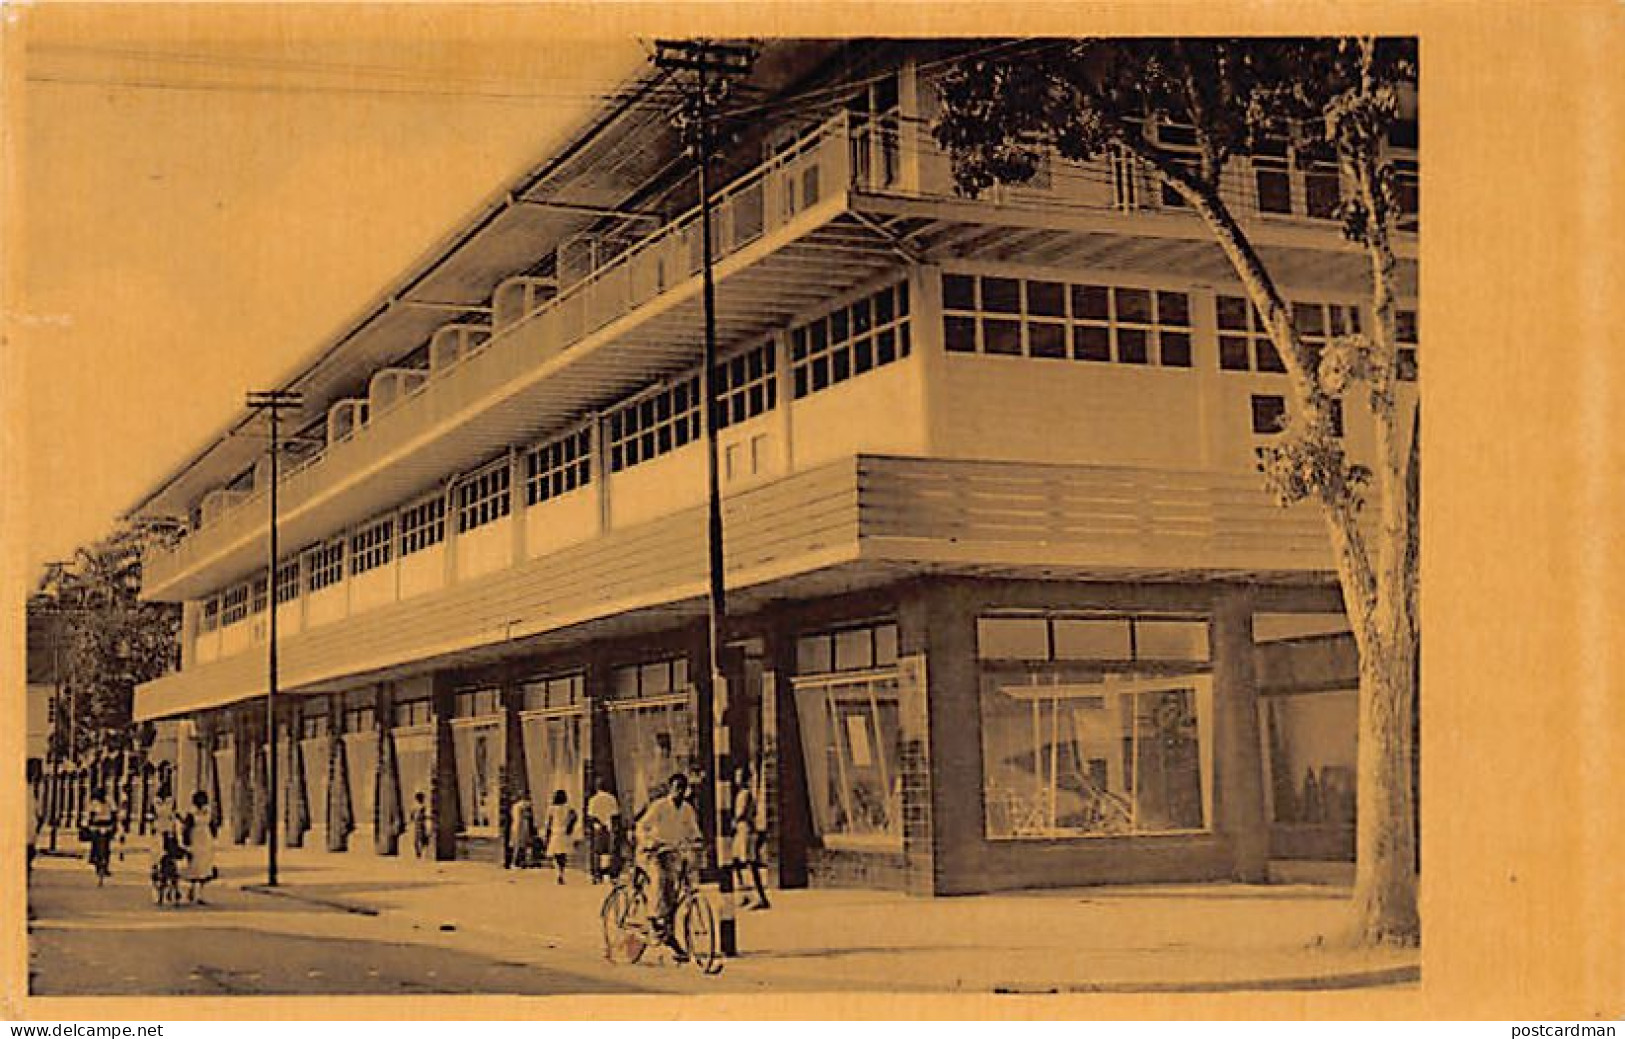 Suriname - PARAMARIBO - C. Kersten & Co. Store - Postcard Publisher - Publ. C. Kersten & Co.  - Surinam